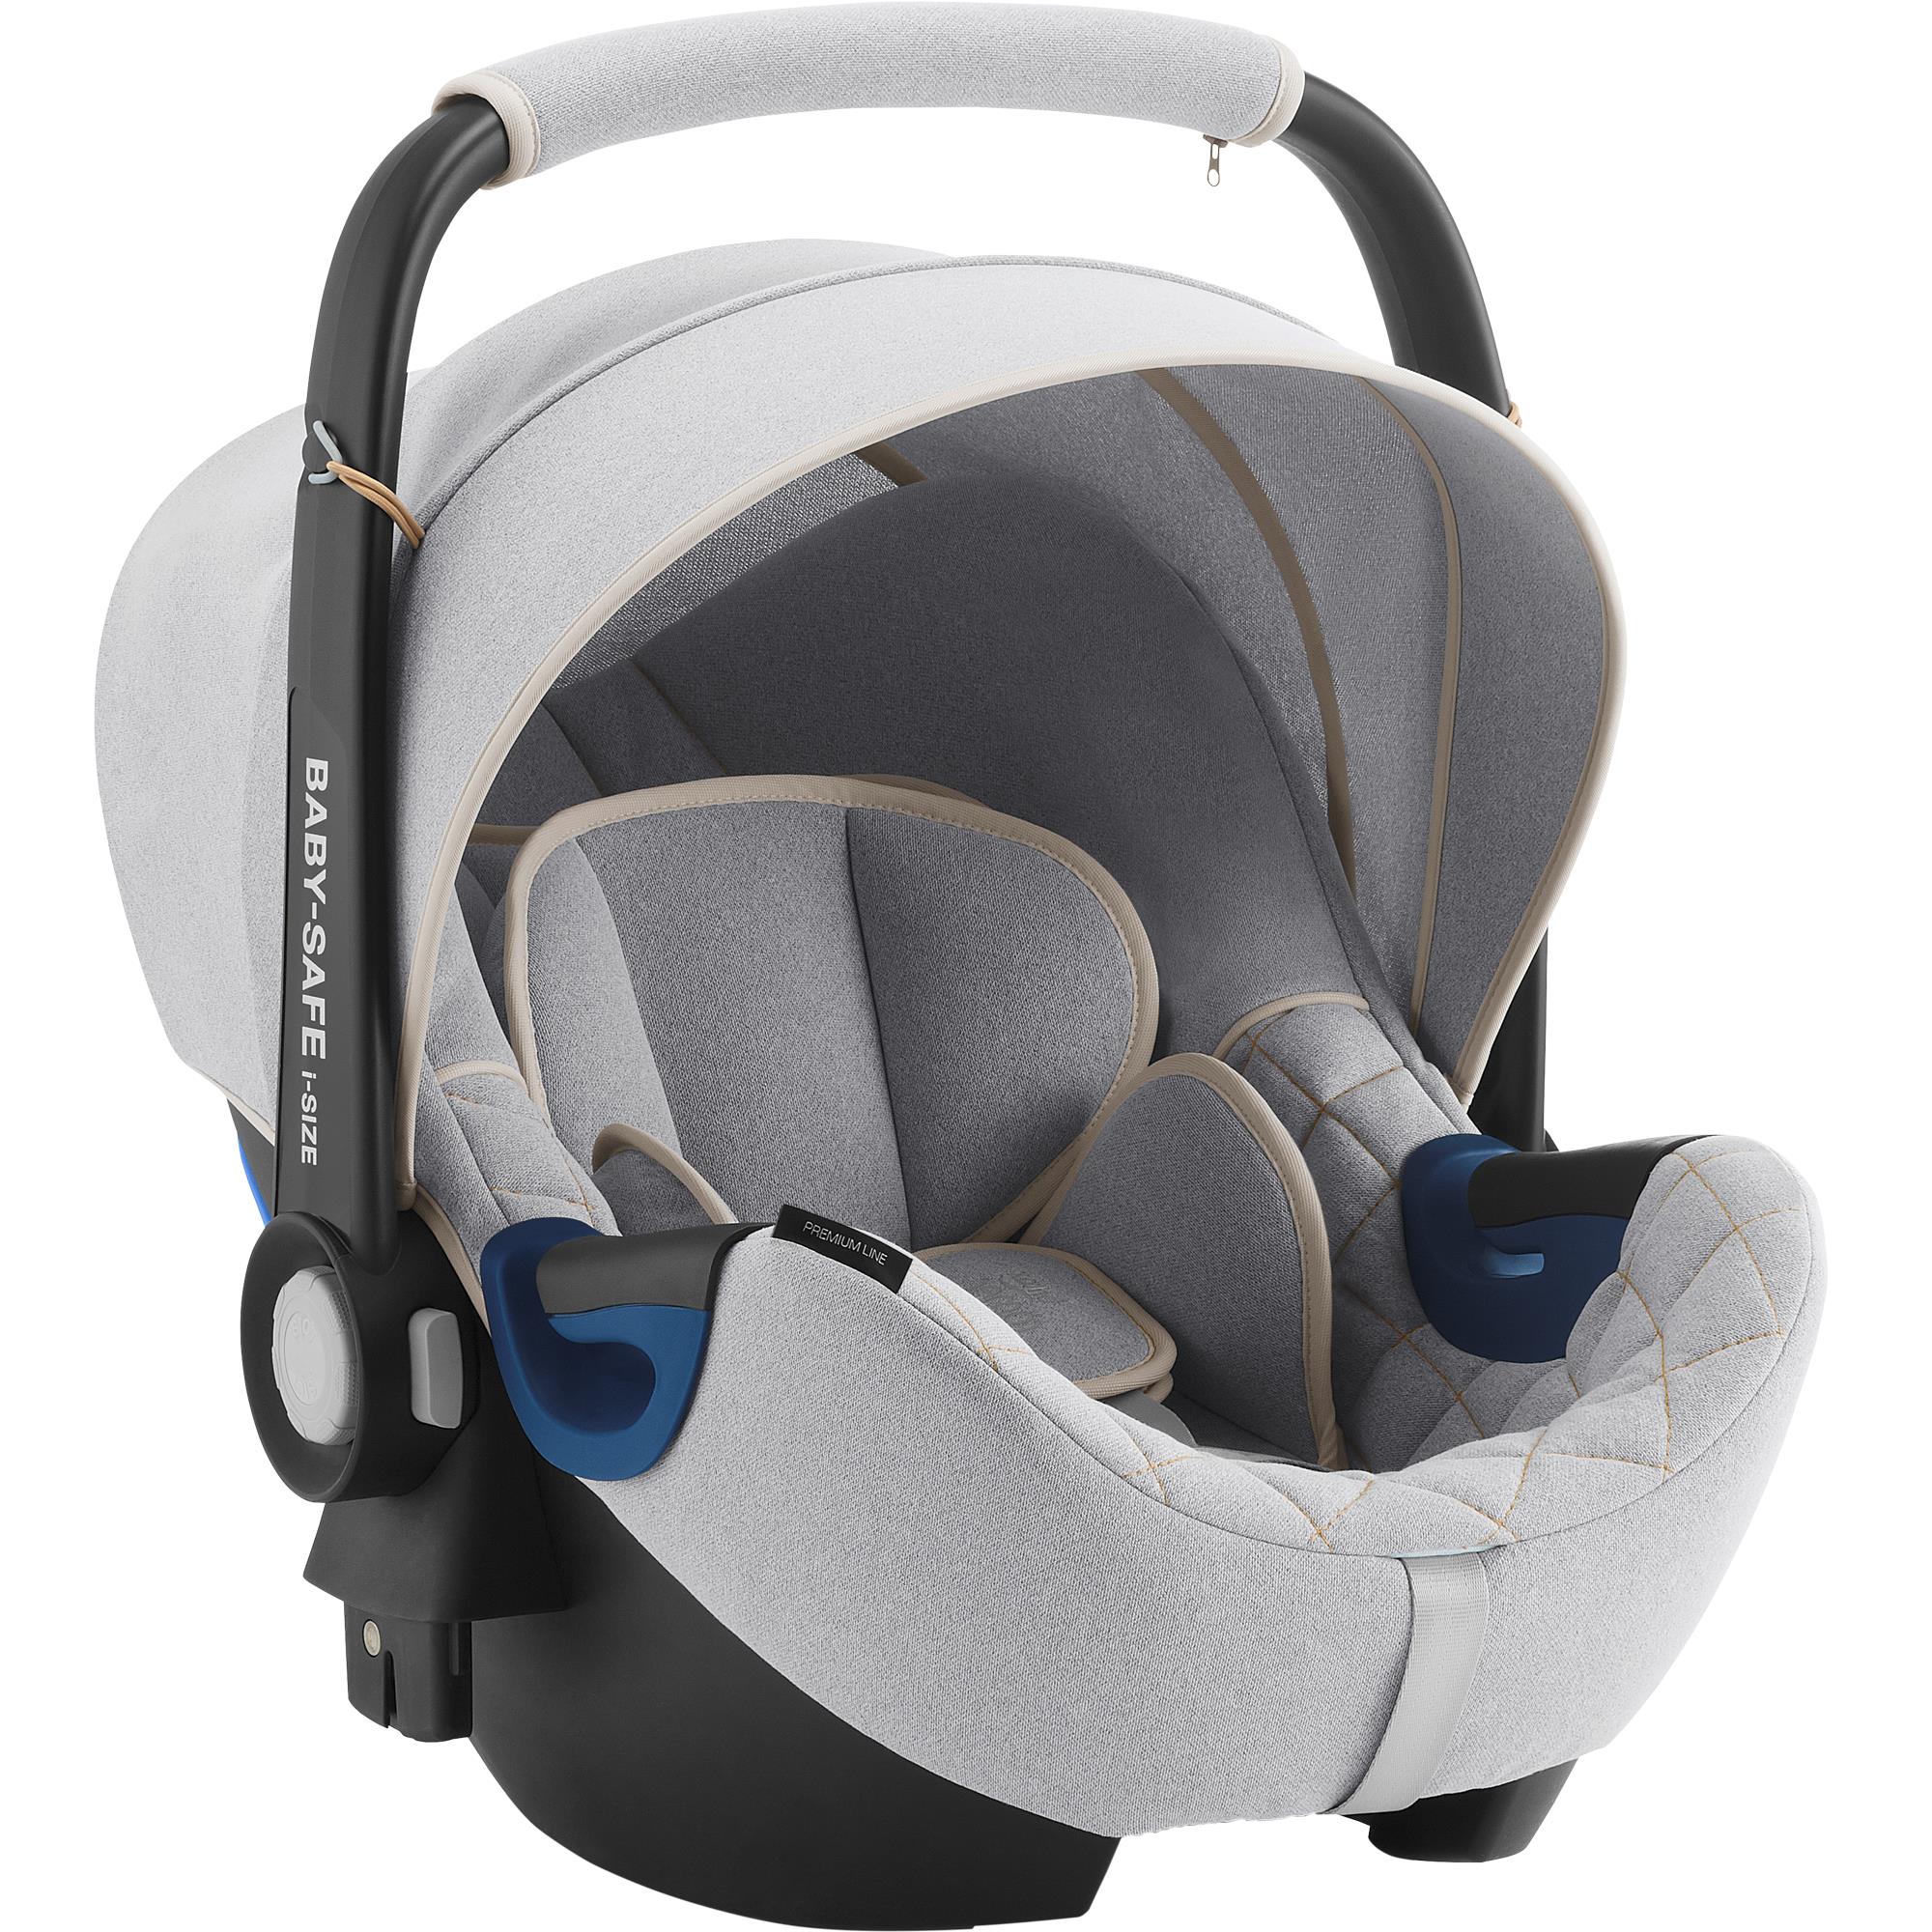 ROMER Baby-Safe 2 i-Size Nordic Grey 2022